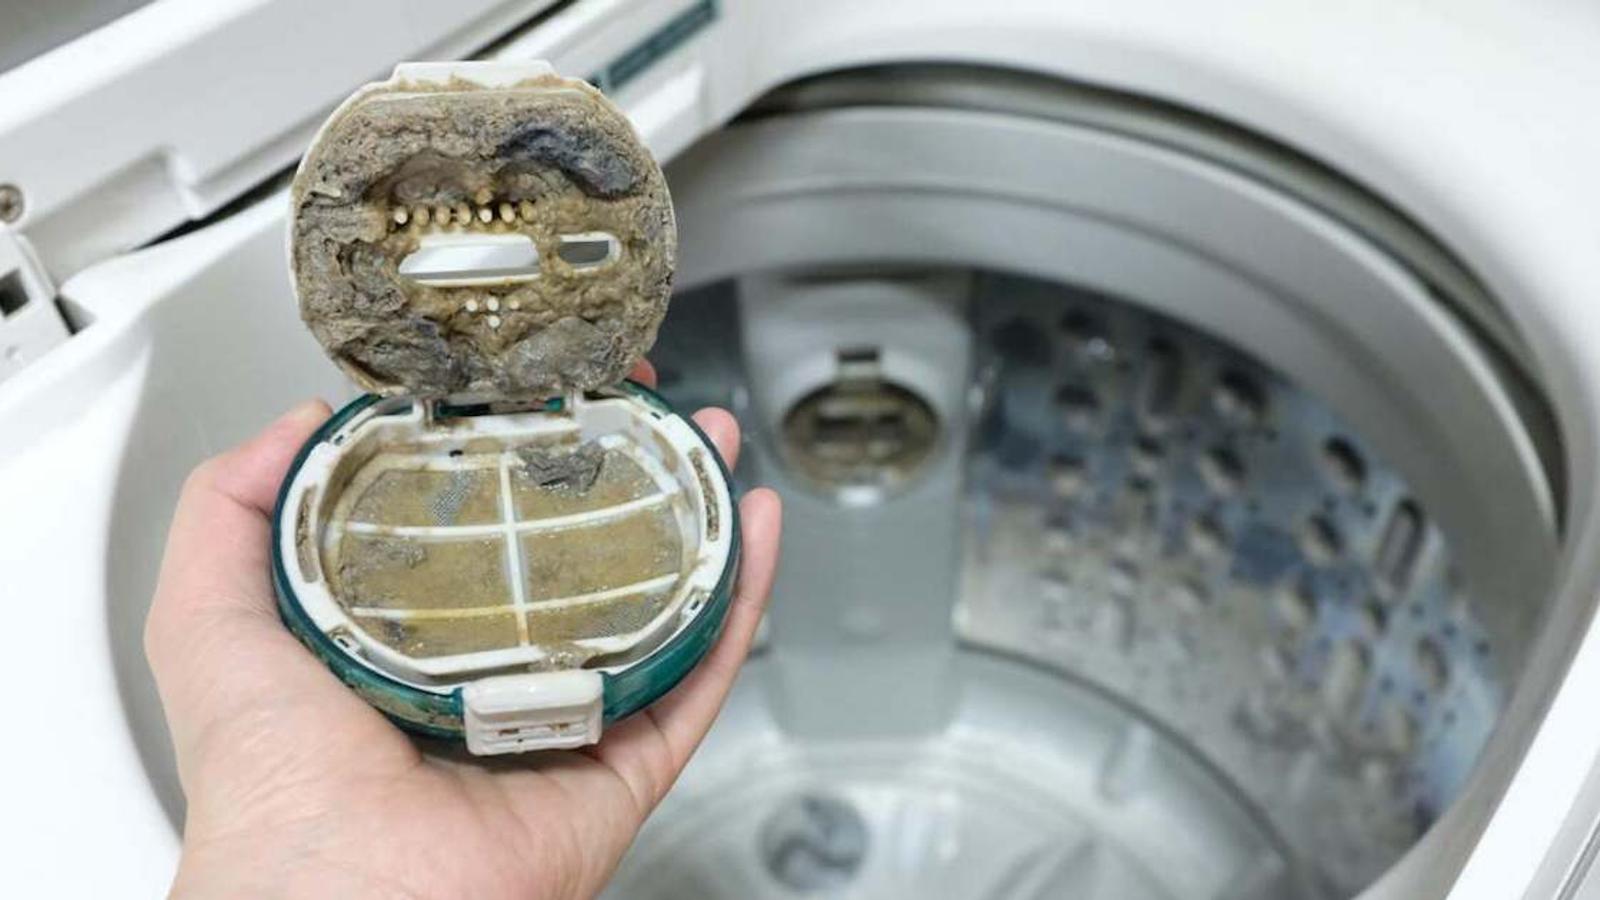 Comment trouver le filtre de votre machine à laver pour le nettoyer